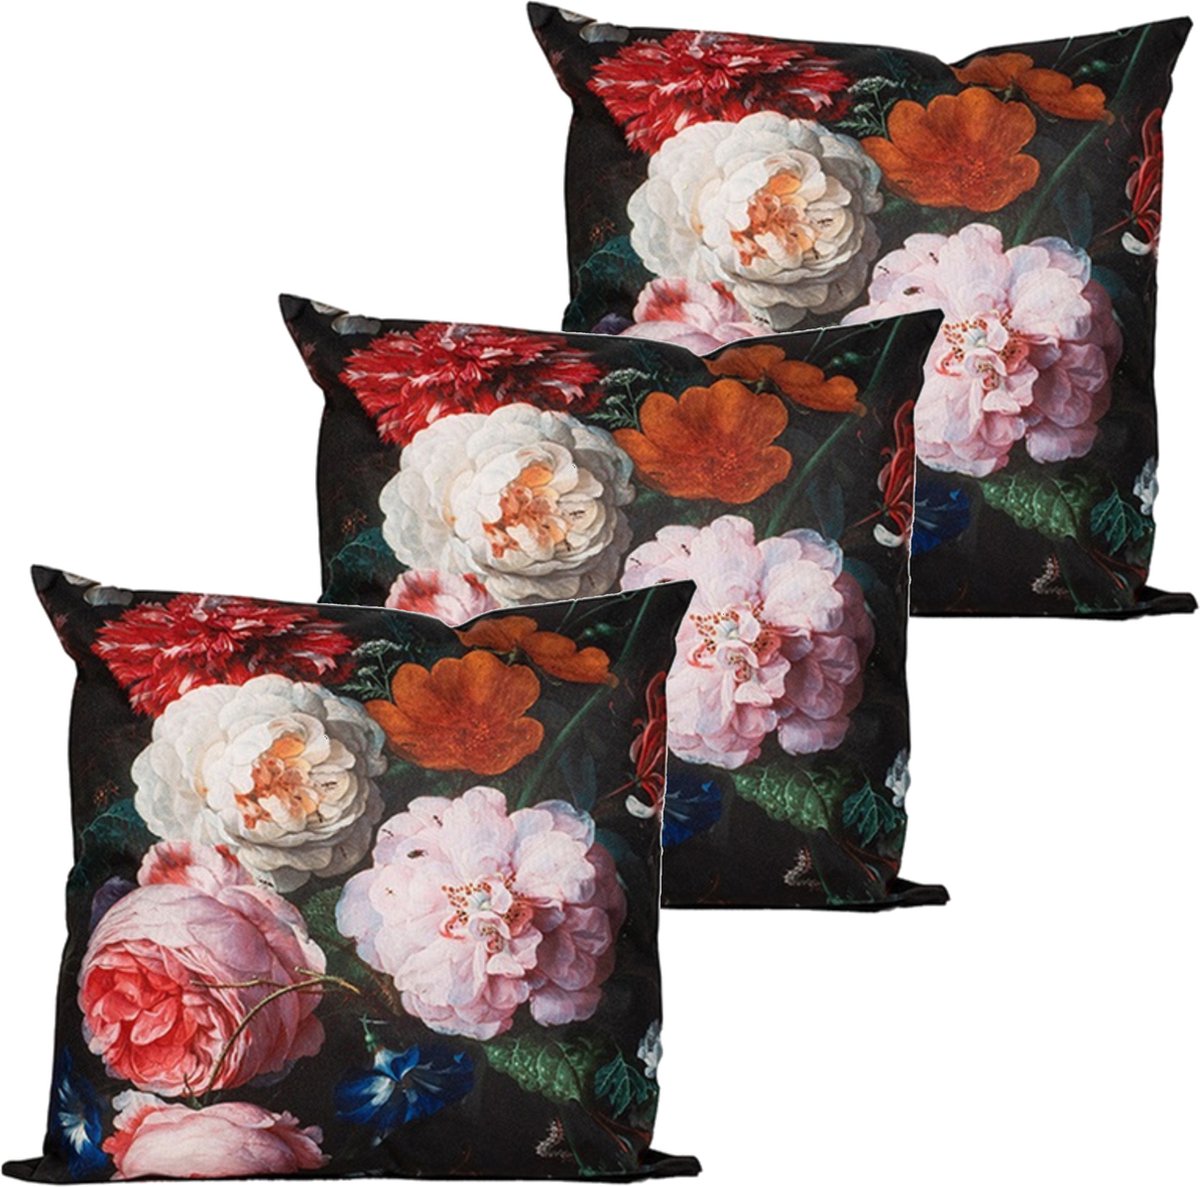 Anna's collection buitenkussen bloem - 3x - roze/zwart - 60 x 60 cm - Water en UV bestendig